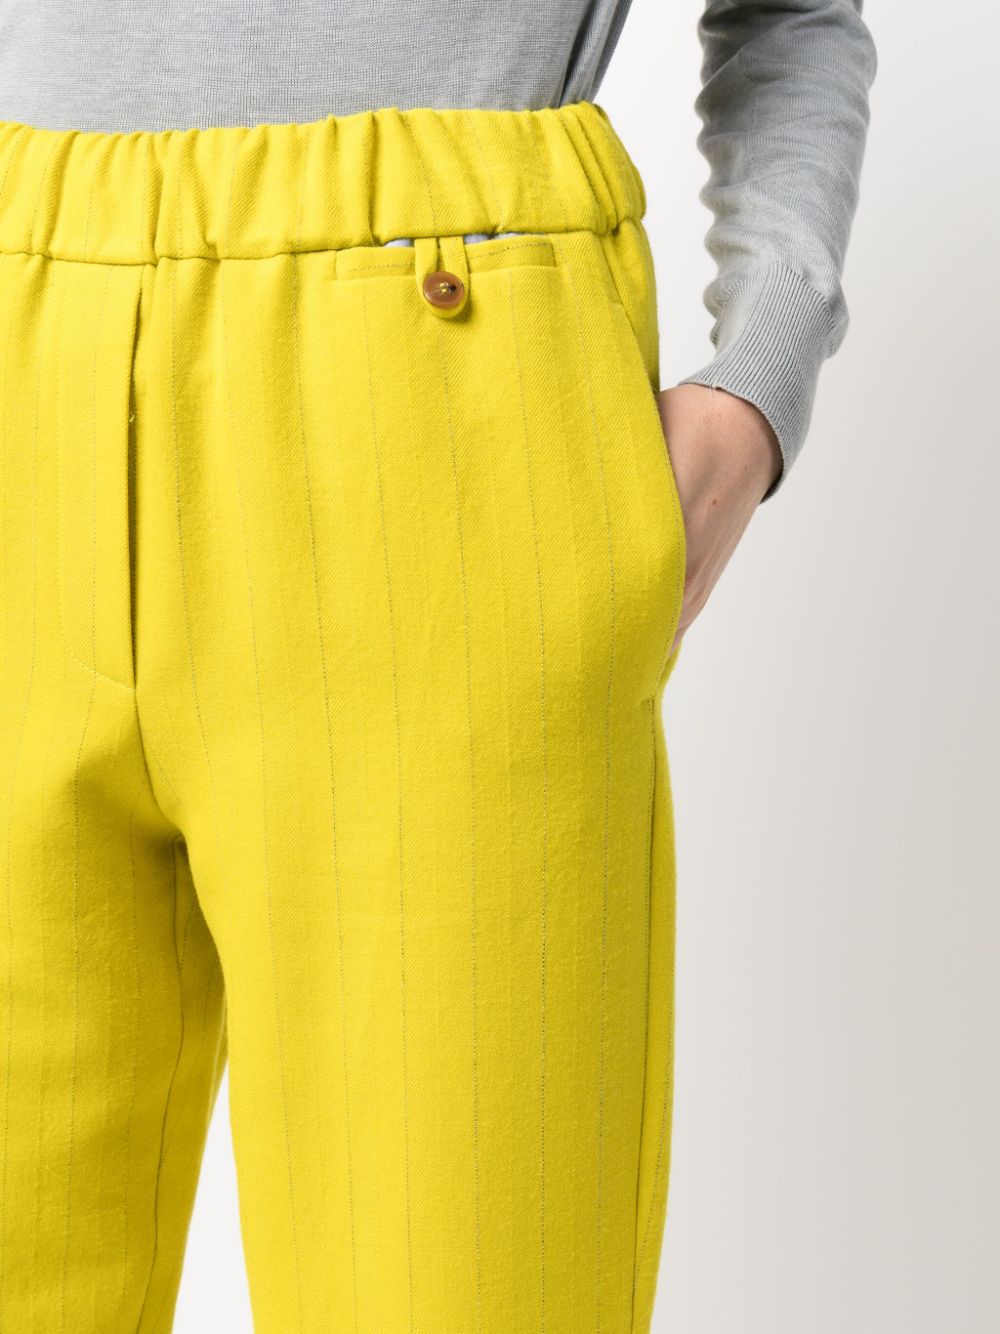 Pantalon femme jaune